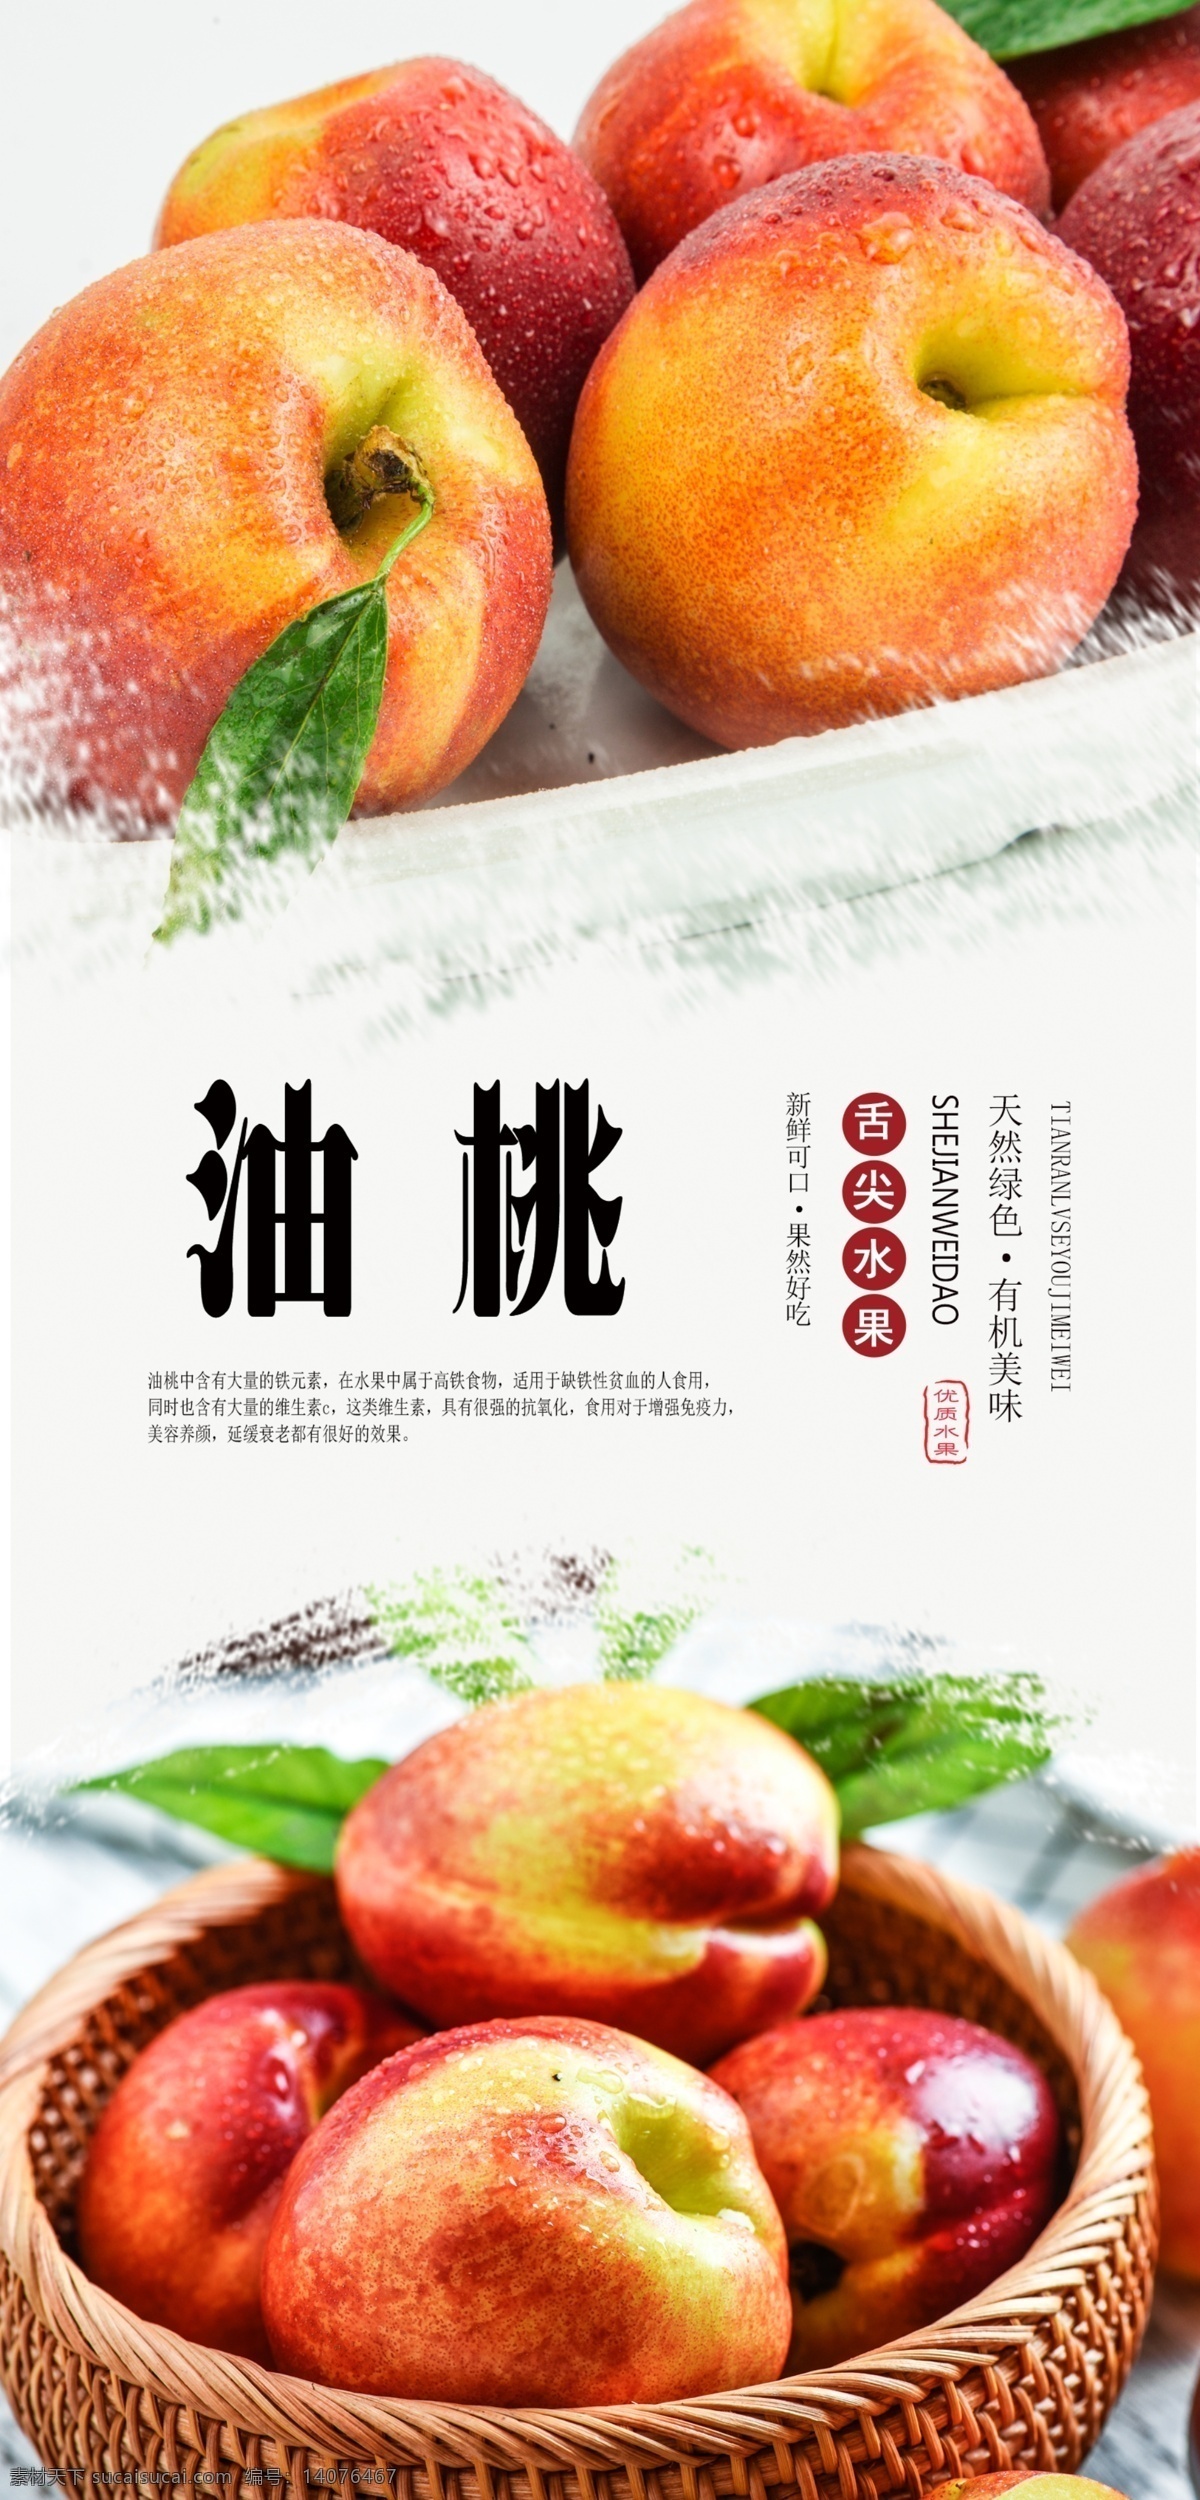 油桃分层海报 油桃 桃子 新鲜 天然 无公害 营养 美味 绿色 分层